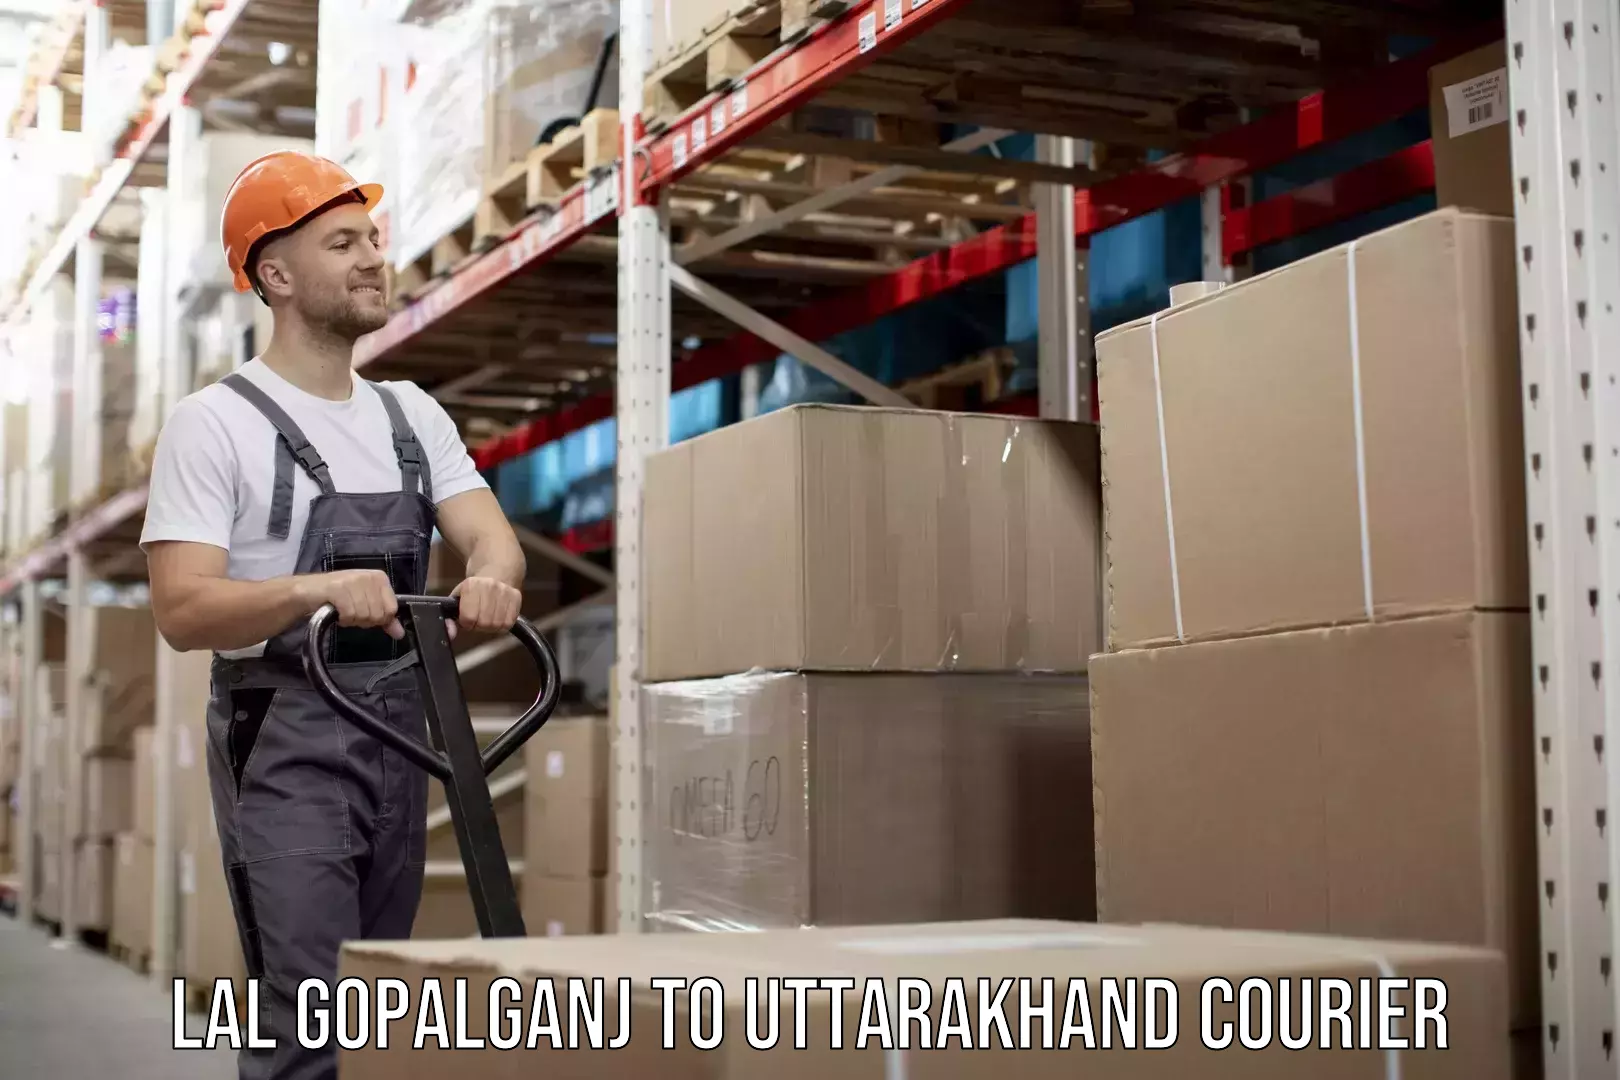 Skilled furniture movers Lal Gopalganj to Uttarakhand